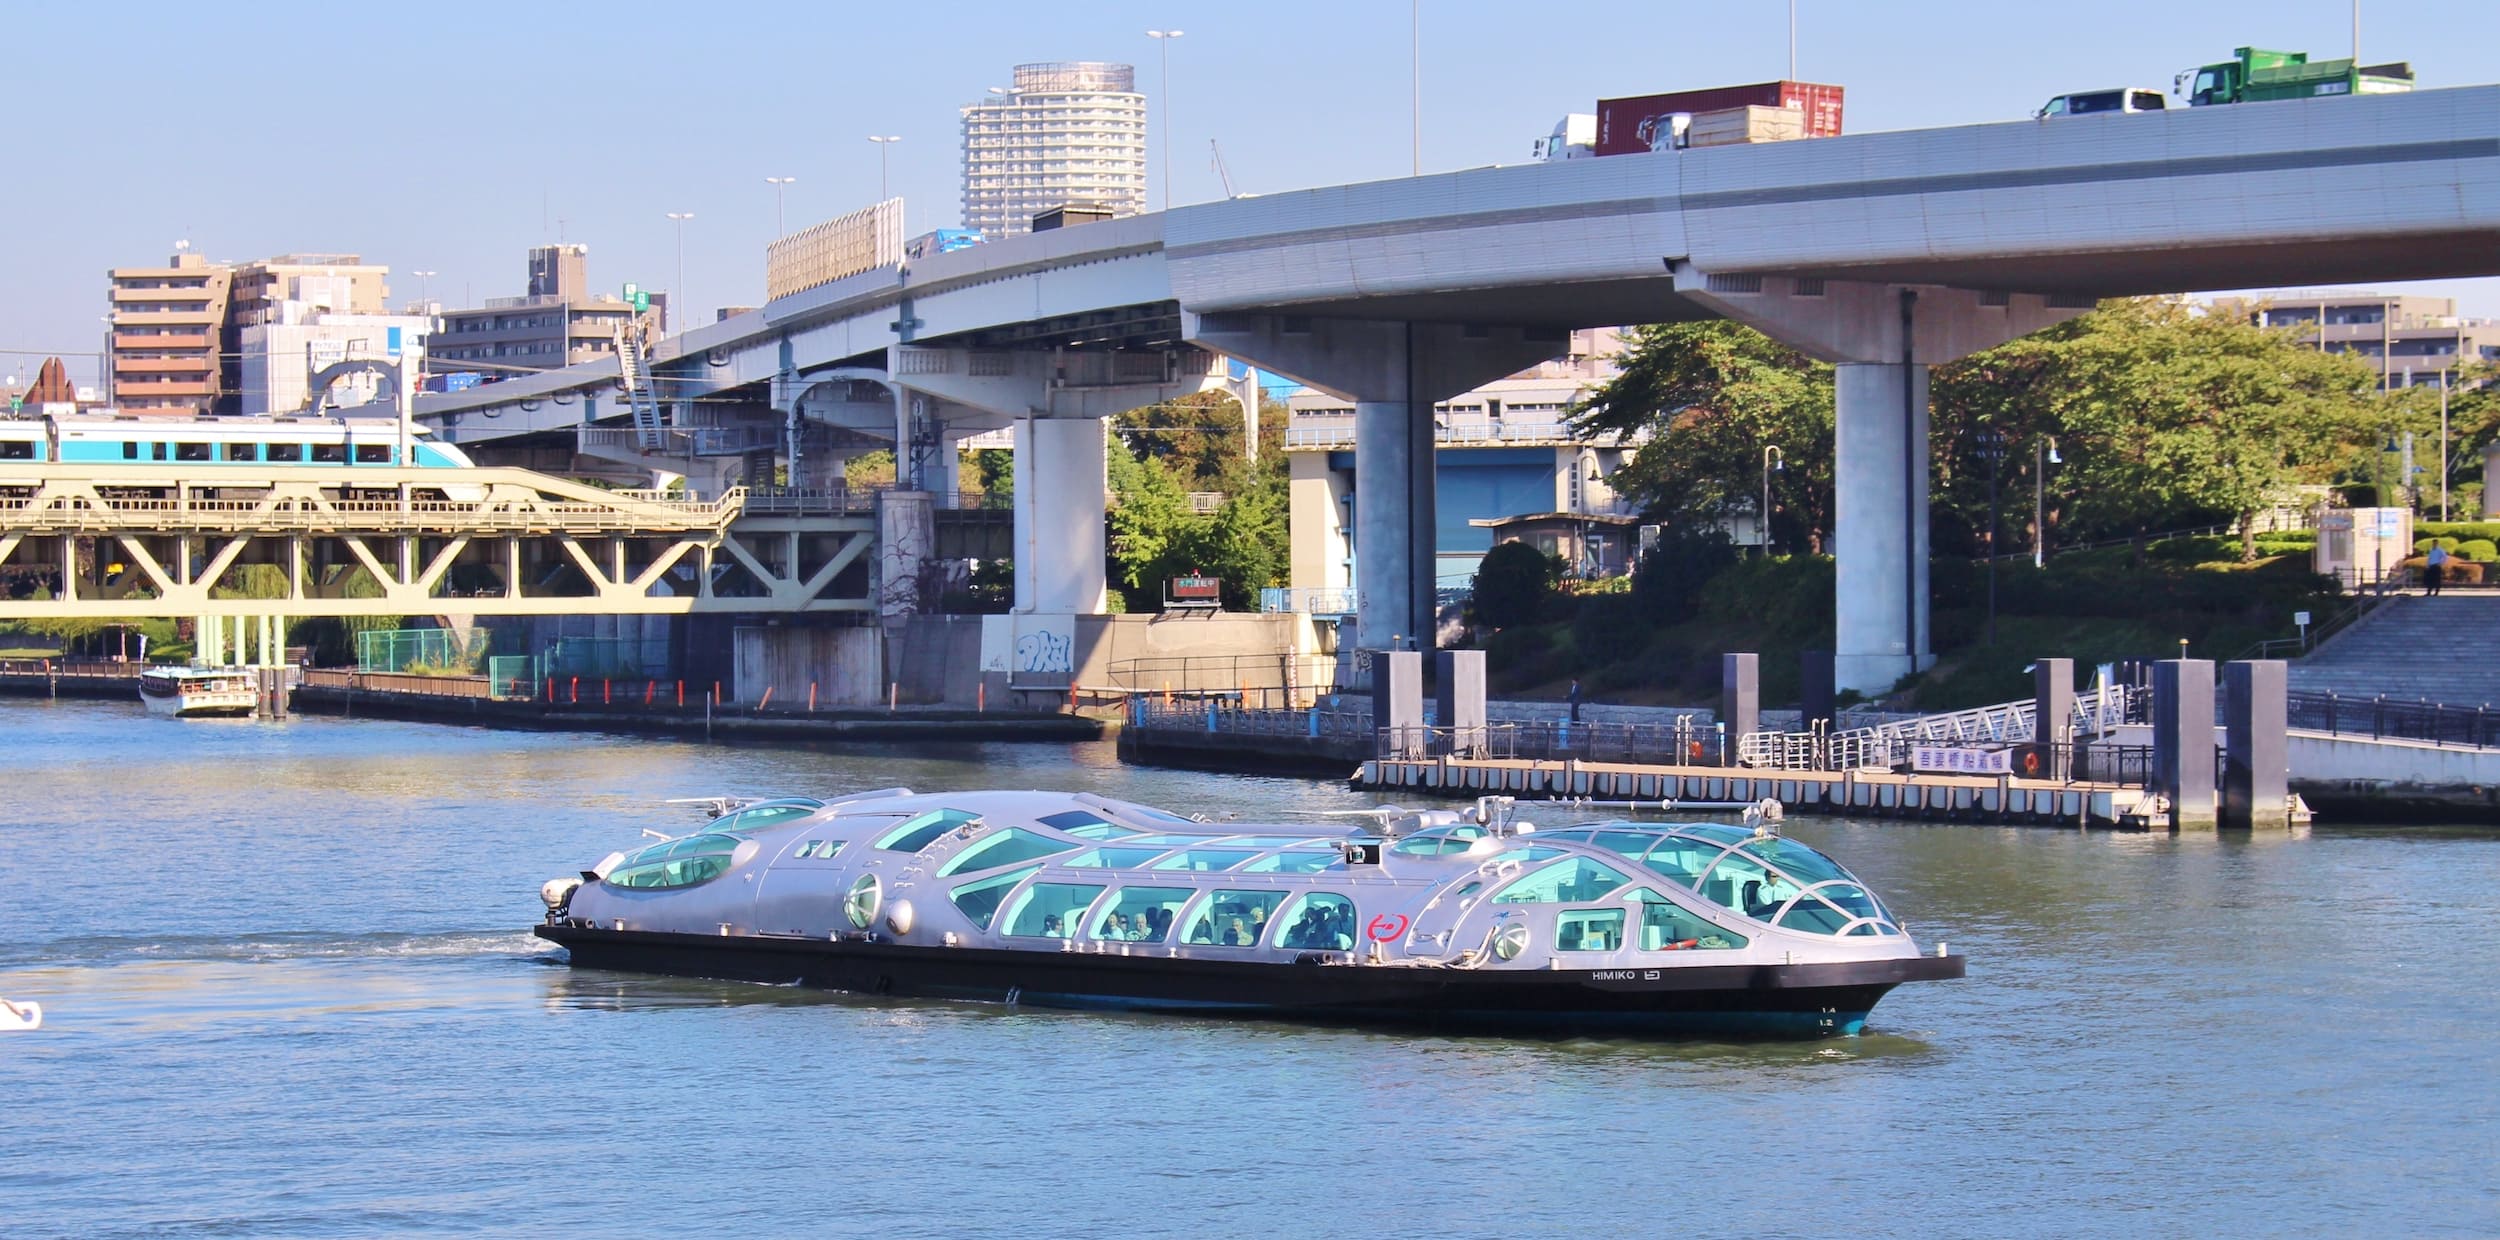 transporte: Tokyo Water Bus